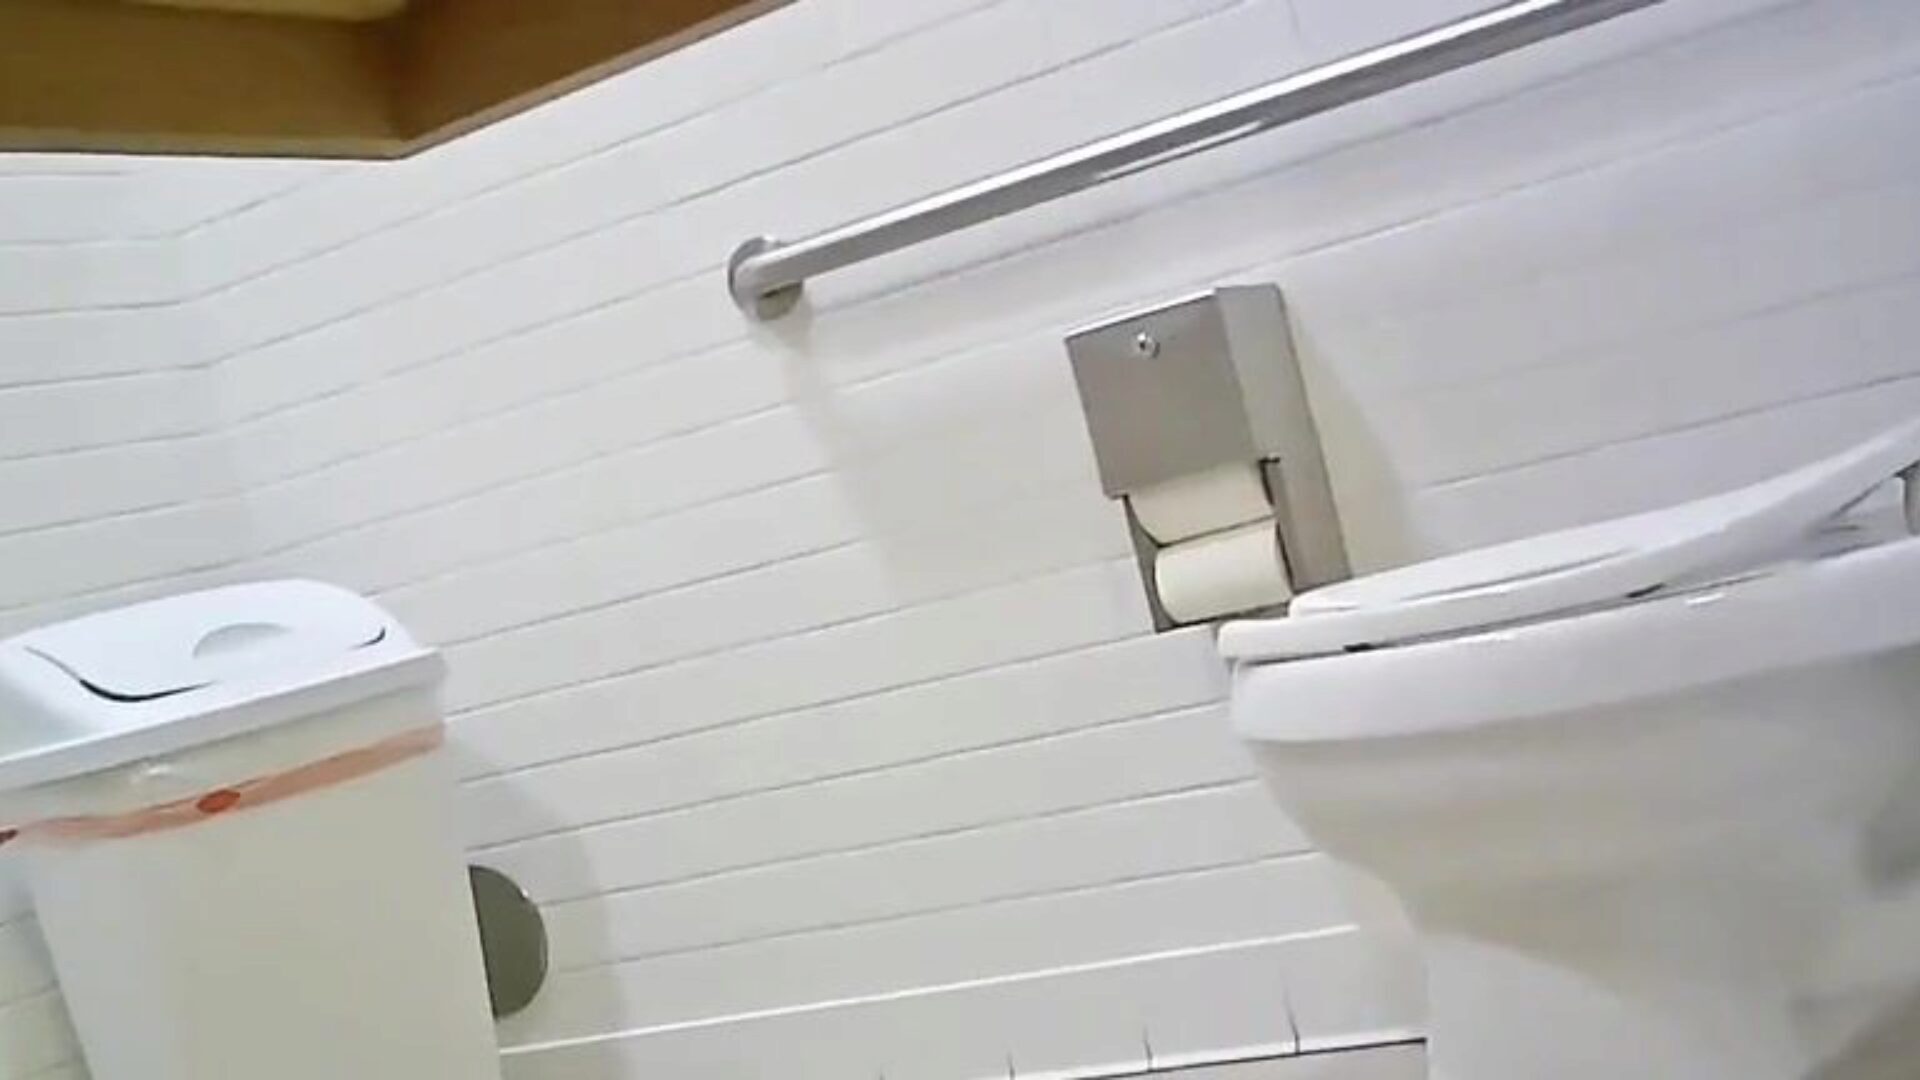 skrivena toaletna kamera - odgovara vrućem idealnom gazuu, pogledajte ovo, recite mi što mislite;